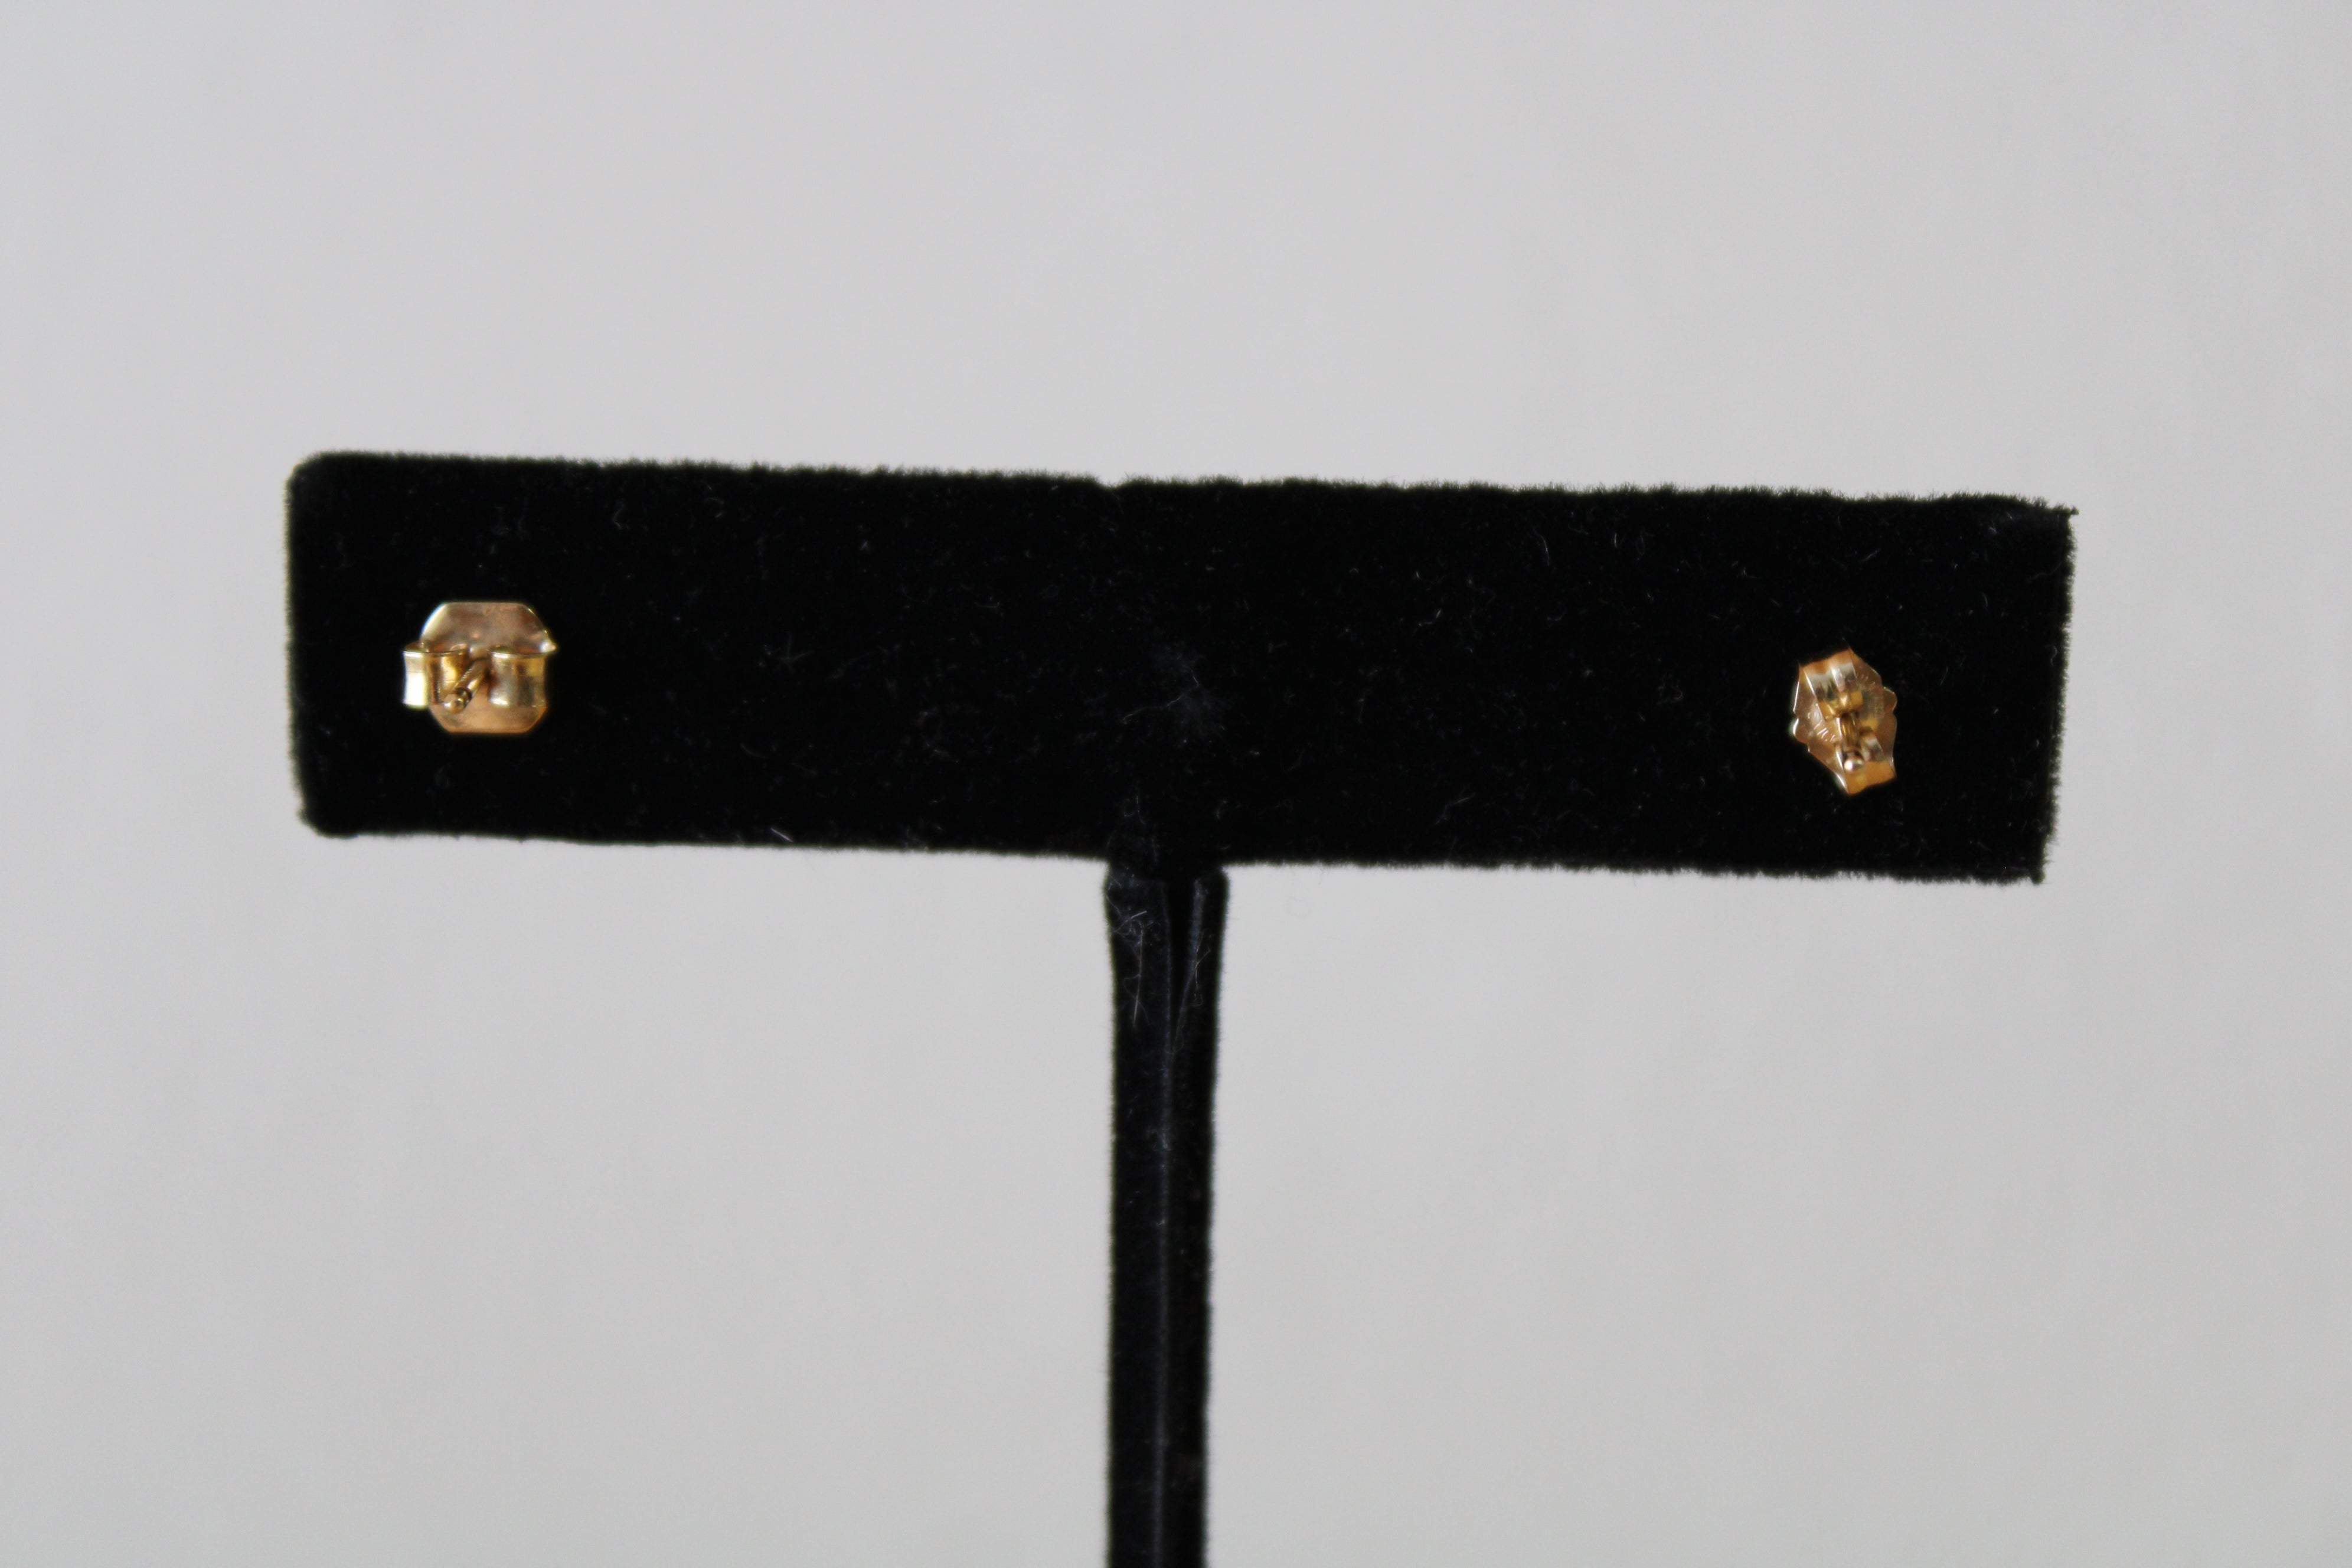 14KT Gold CZ Clear Stone Stud Earrings